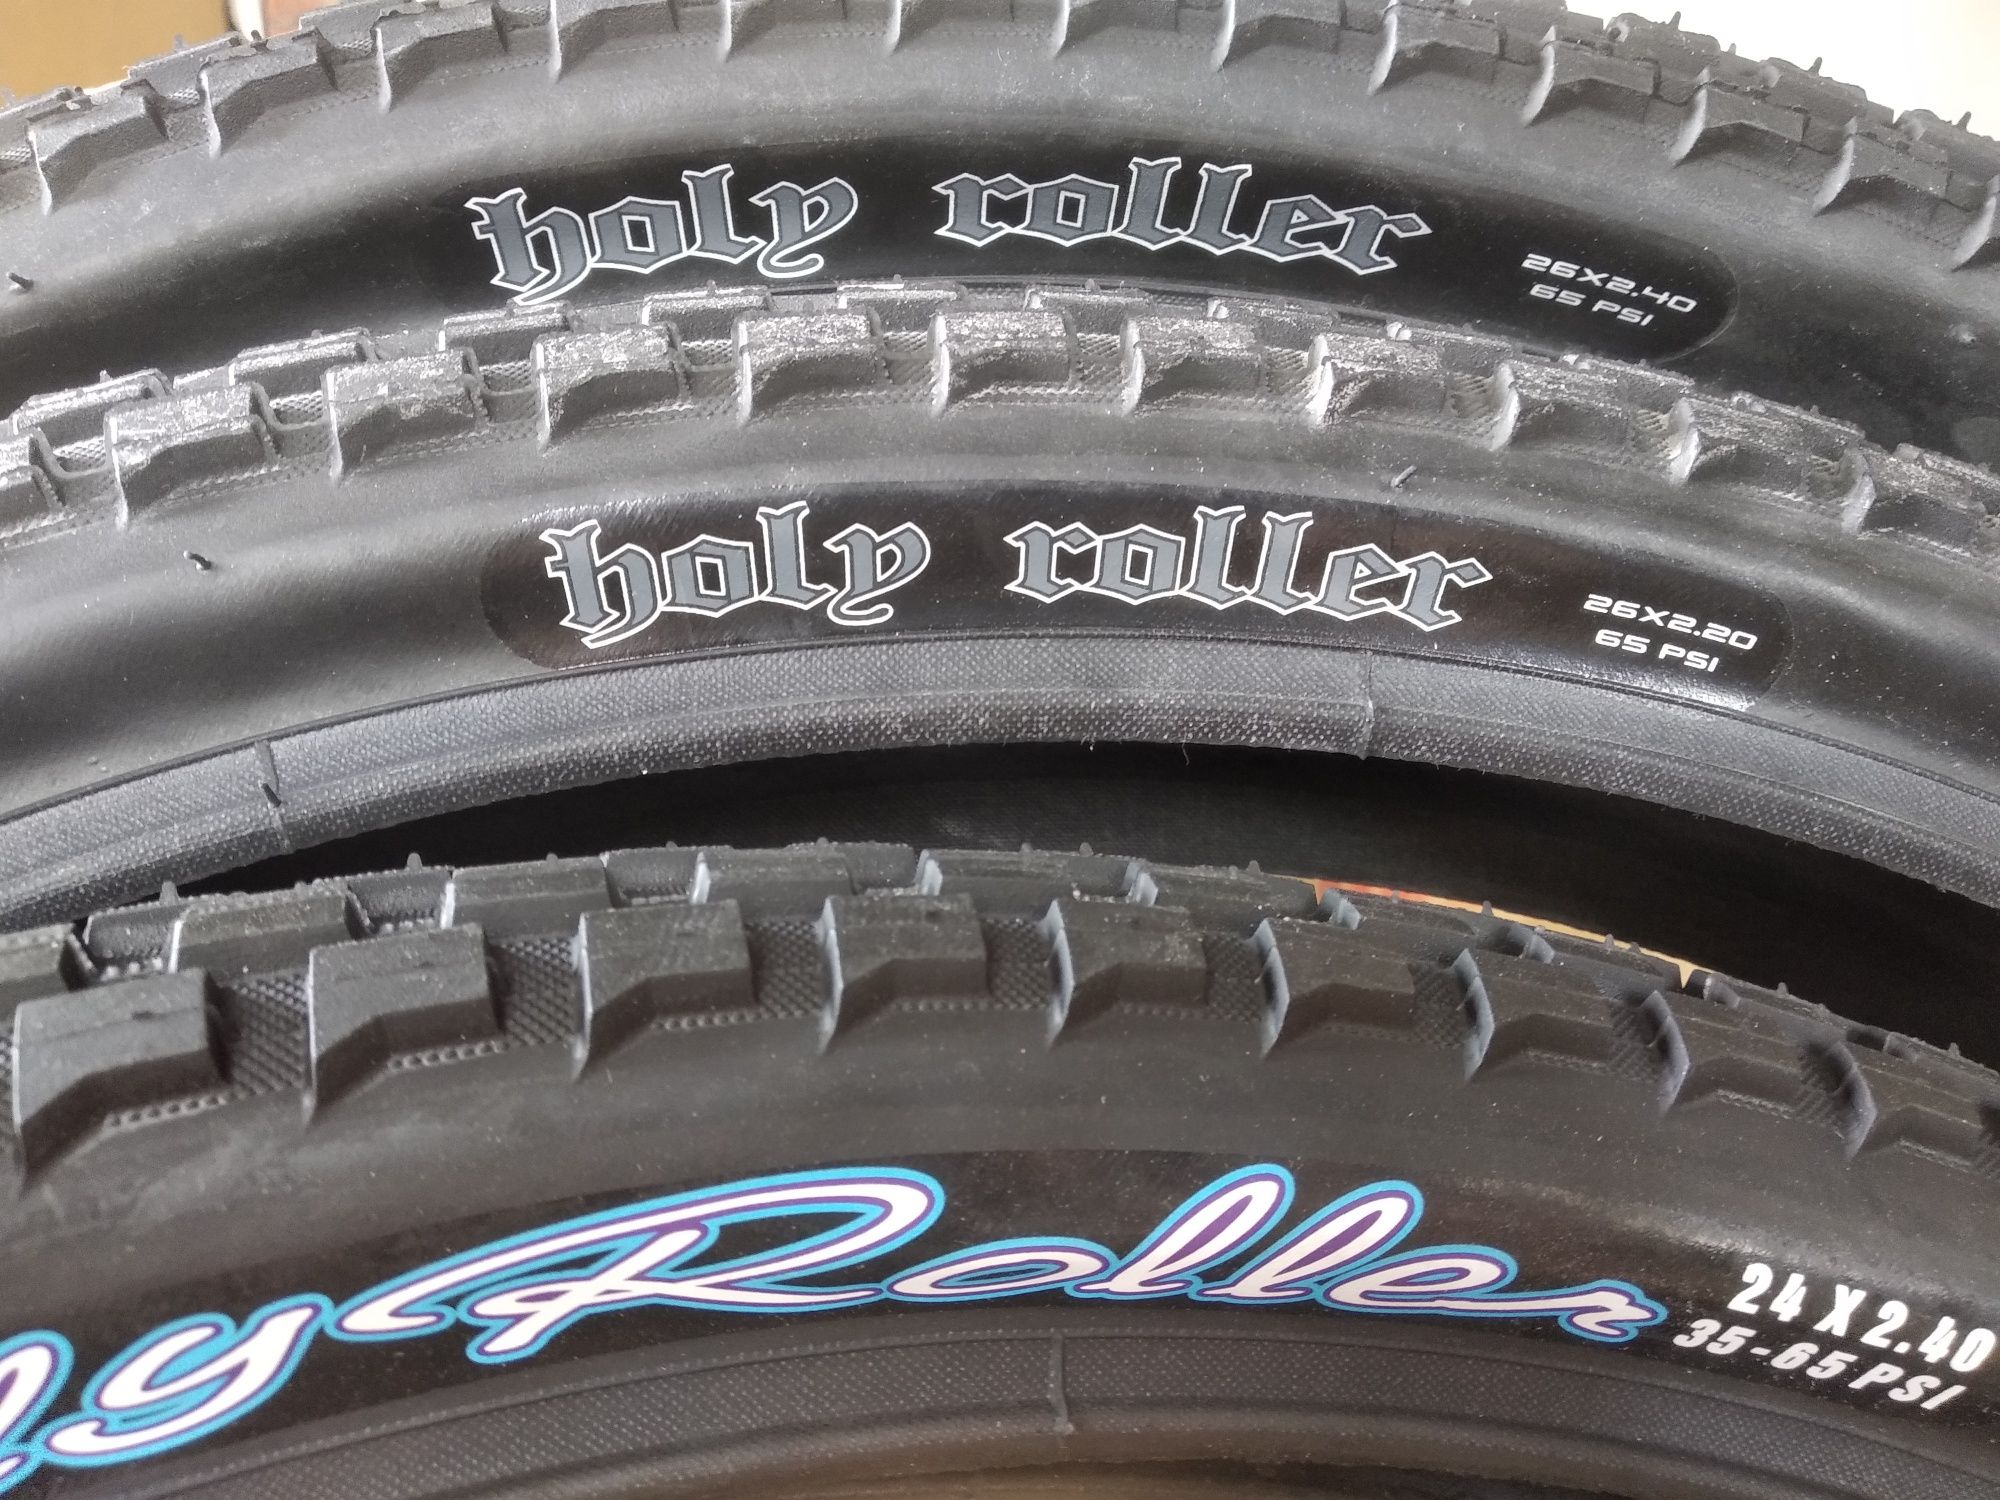 Покрышка Maxxis Holy Roller 26 24 20 Street Dirt велосипед резина вело